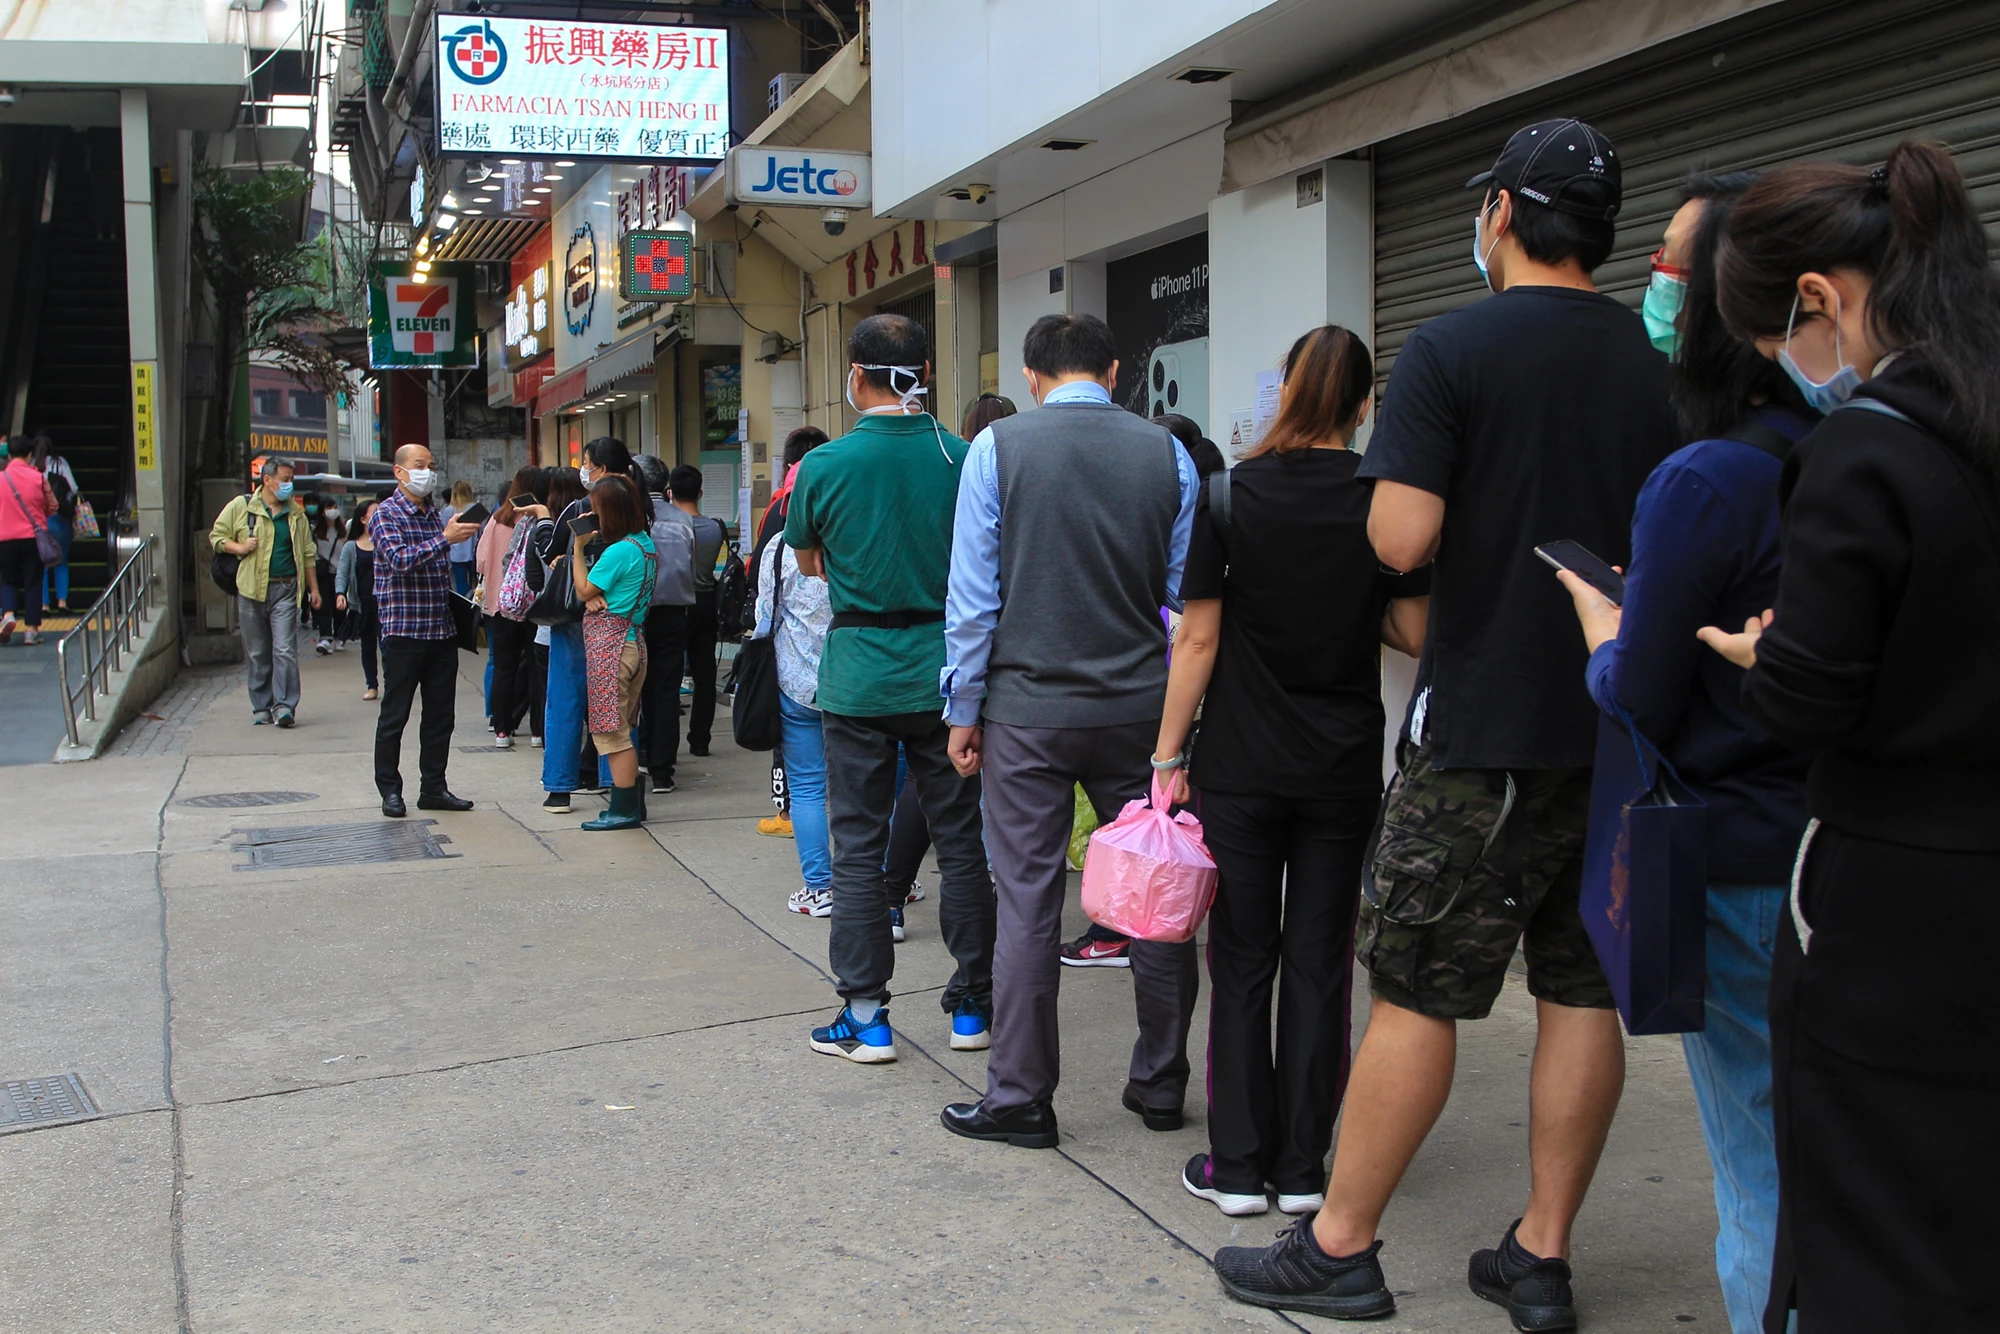 Des gens faisant la queue pour obtenir des masques. Photo : Agence photo de Macao / Unsplash